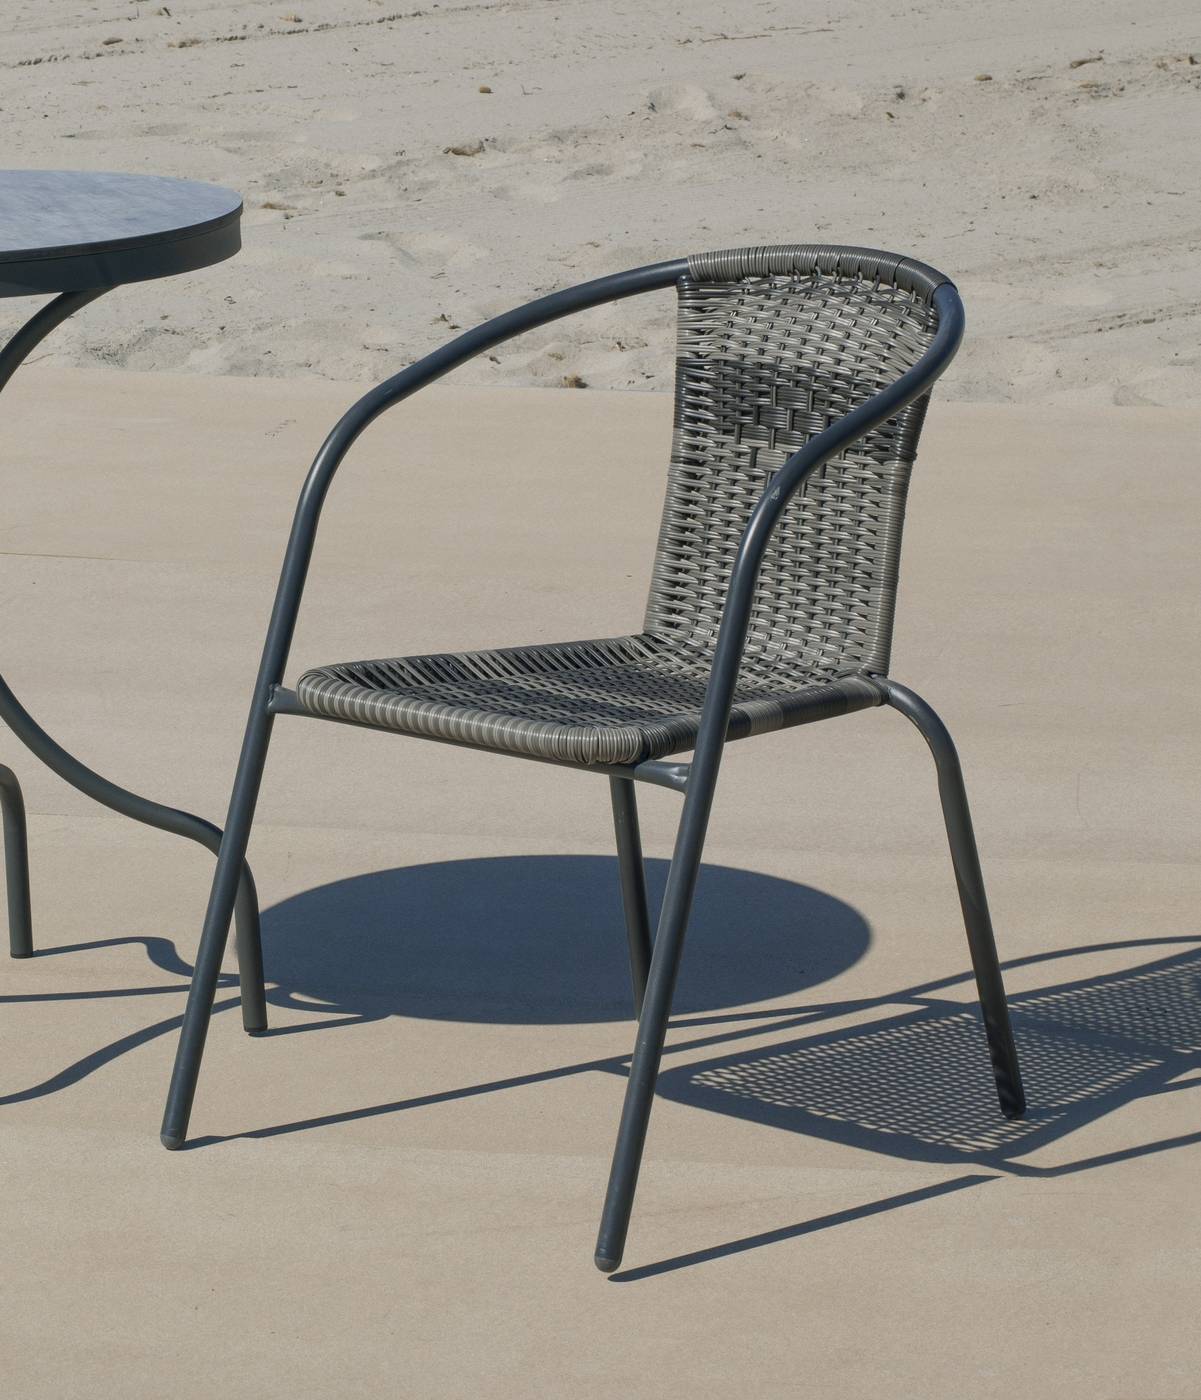 Set Acero Sulam-Santana 60-2 - Conjunto de acero color antracita: mesa redonda de 60 cm. con tapa de cristal templado + 2 sillones de acero y wicker